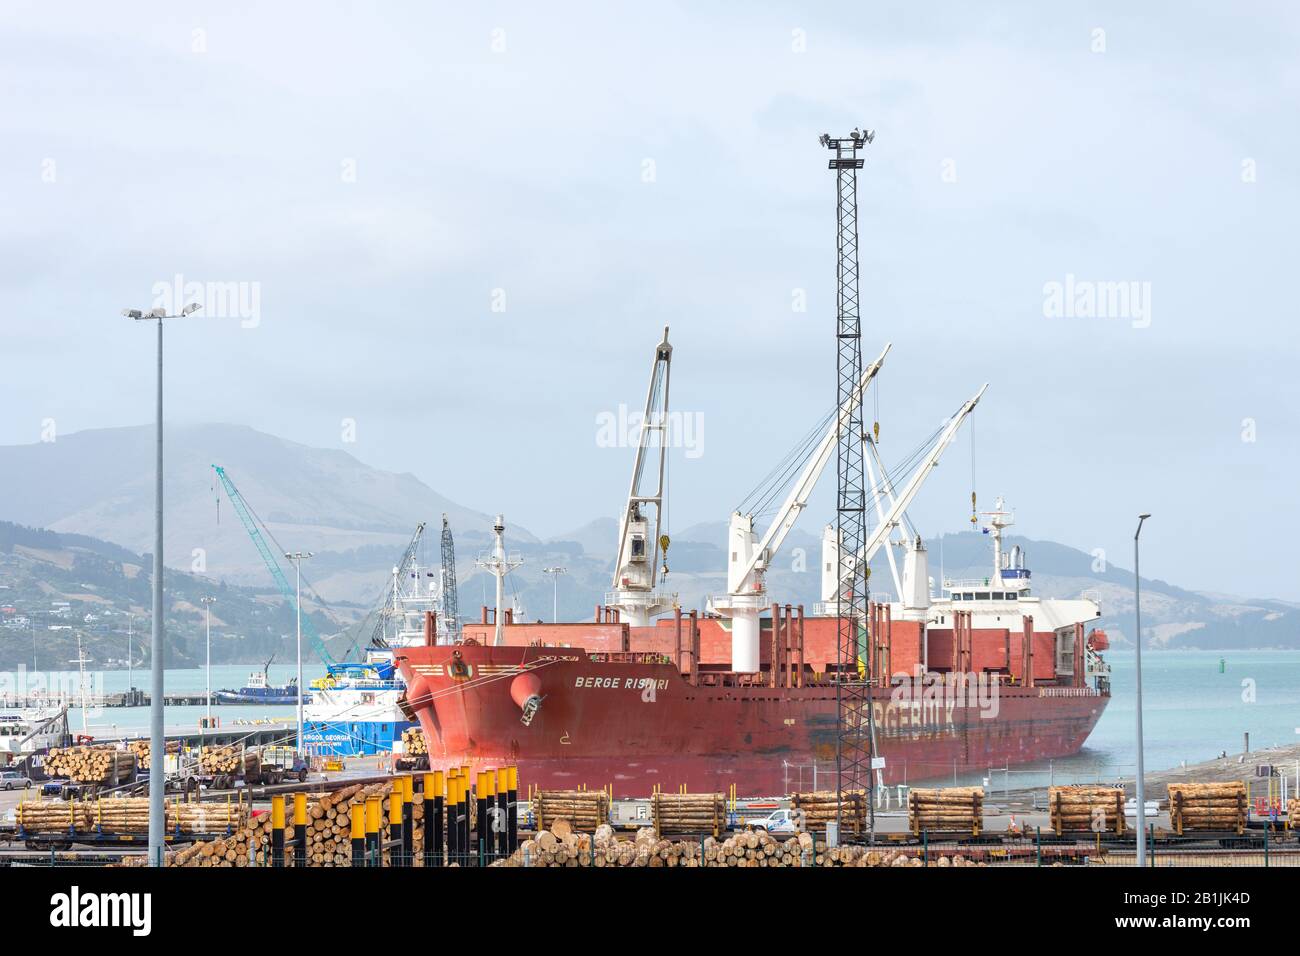 El buque carguero 'Berge Rishiri' atracó en Lyttelton, puerto de Lyttelton, península de Banks, región de Canterbury, Nueva Zelanda Foto de stock